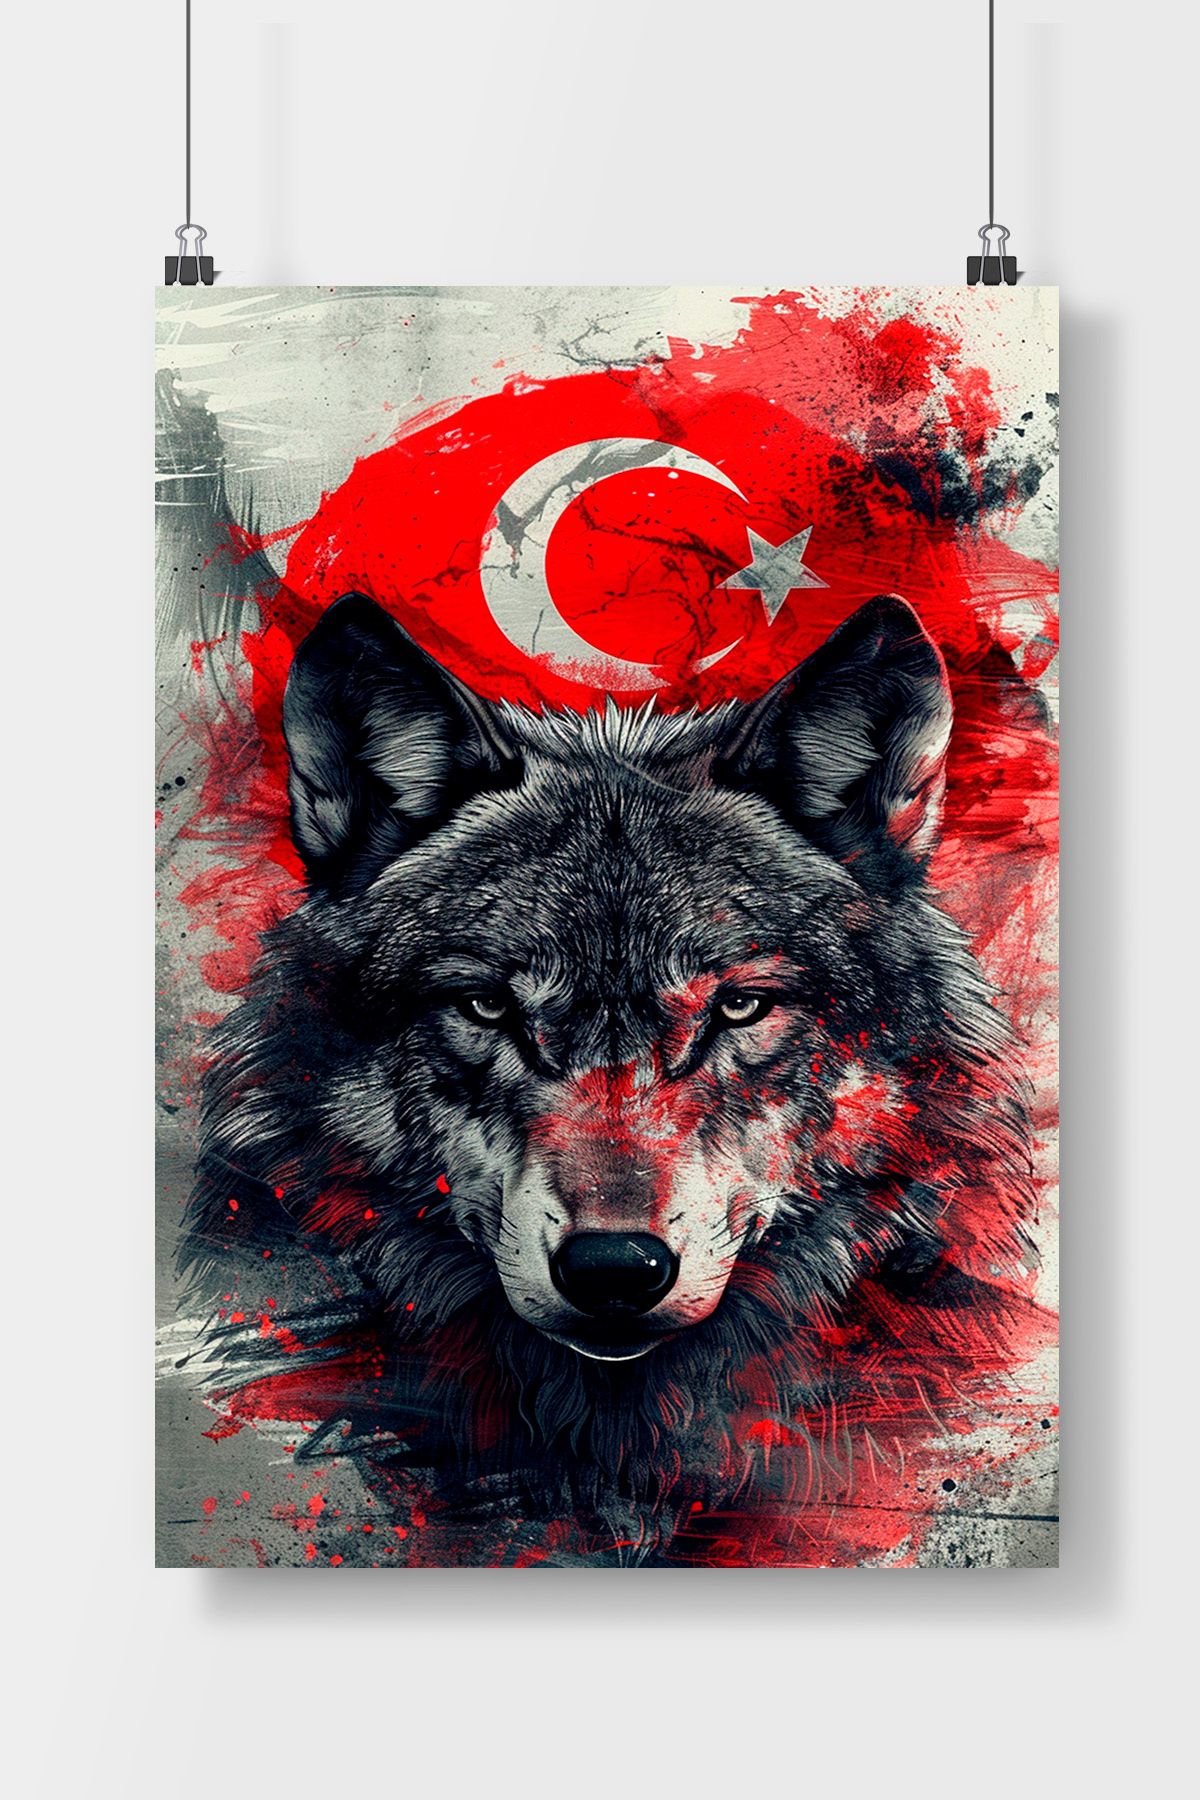 TREND Türk Bayrağı Ve Kurt Posteri Çerçevesiz Parlak Fotoğraf Kağıdı